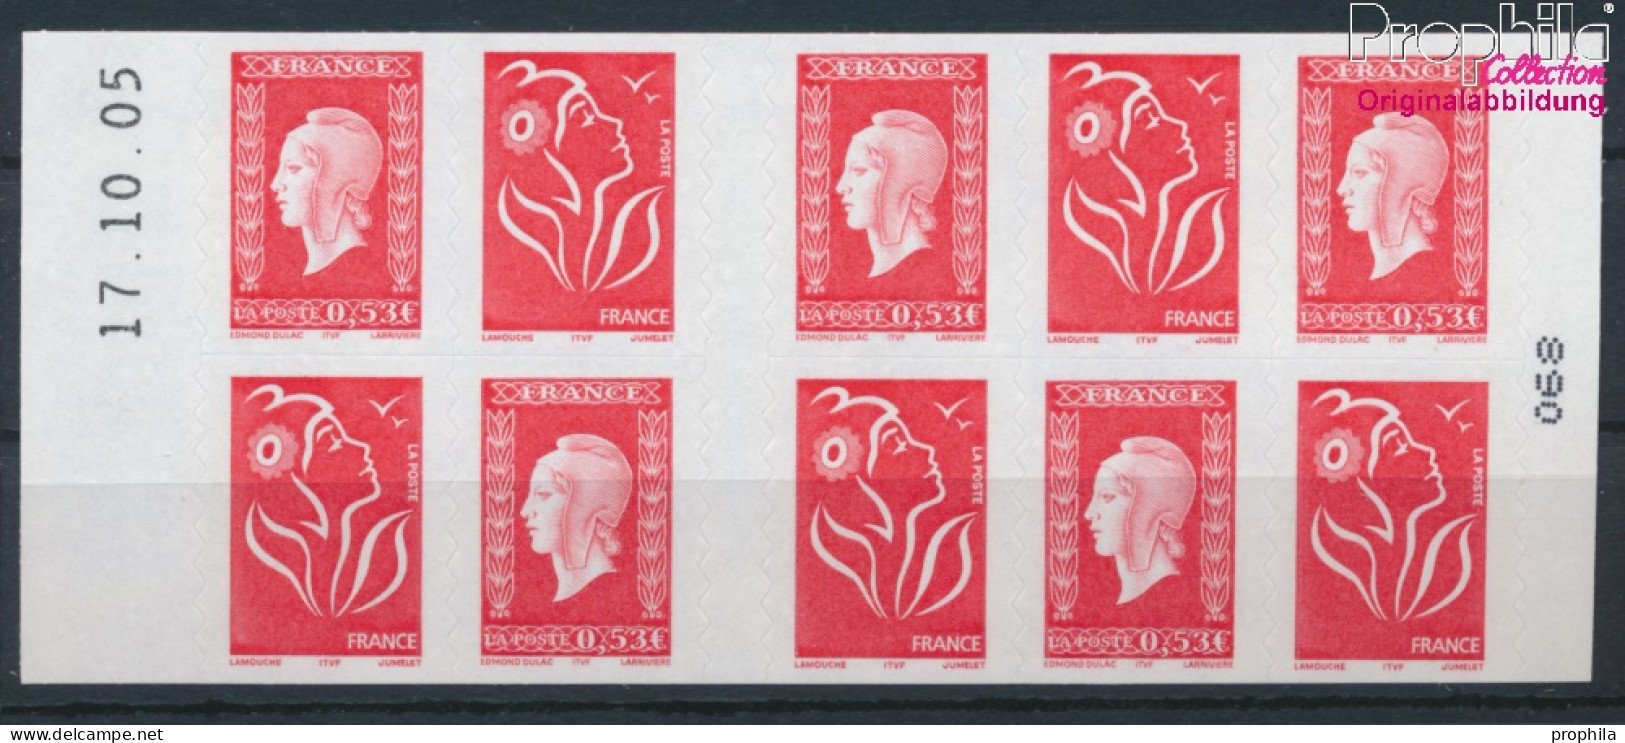 Frankreich 4001MH (kompl.Ausg.) Markenheftchen Mit Nr. 3895 Postfrisch 2005 Freimarke: Marianne (10391257 - Unused Stamps